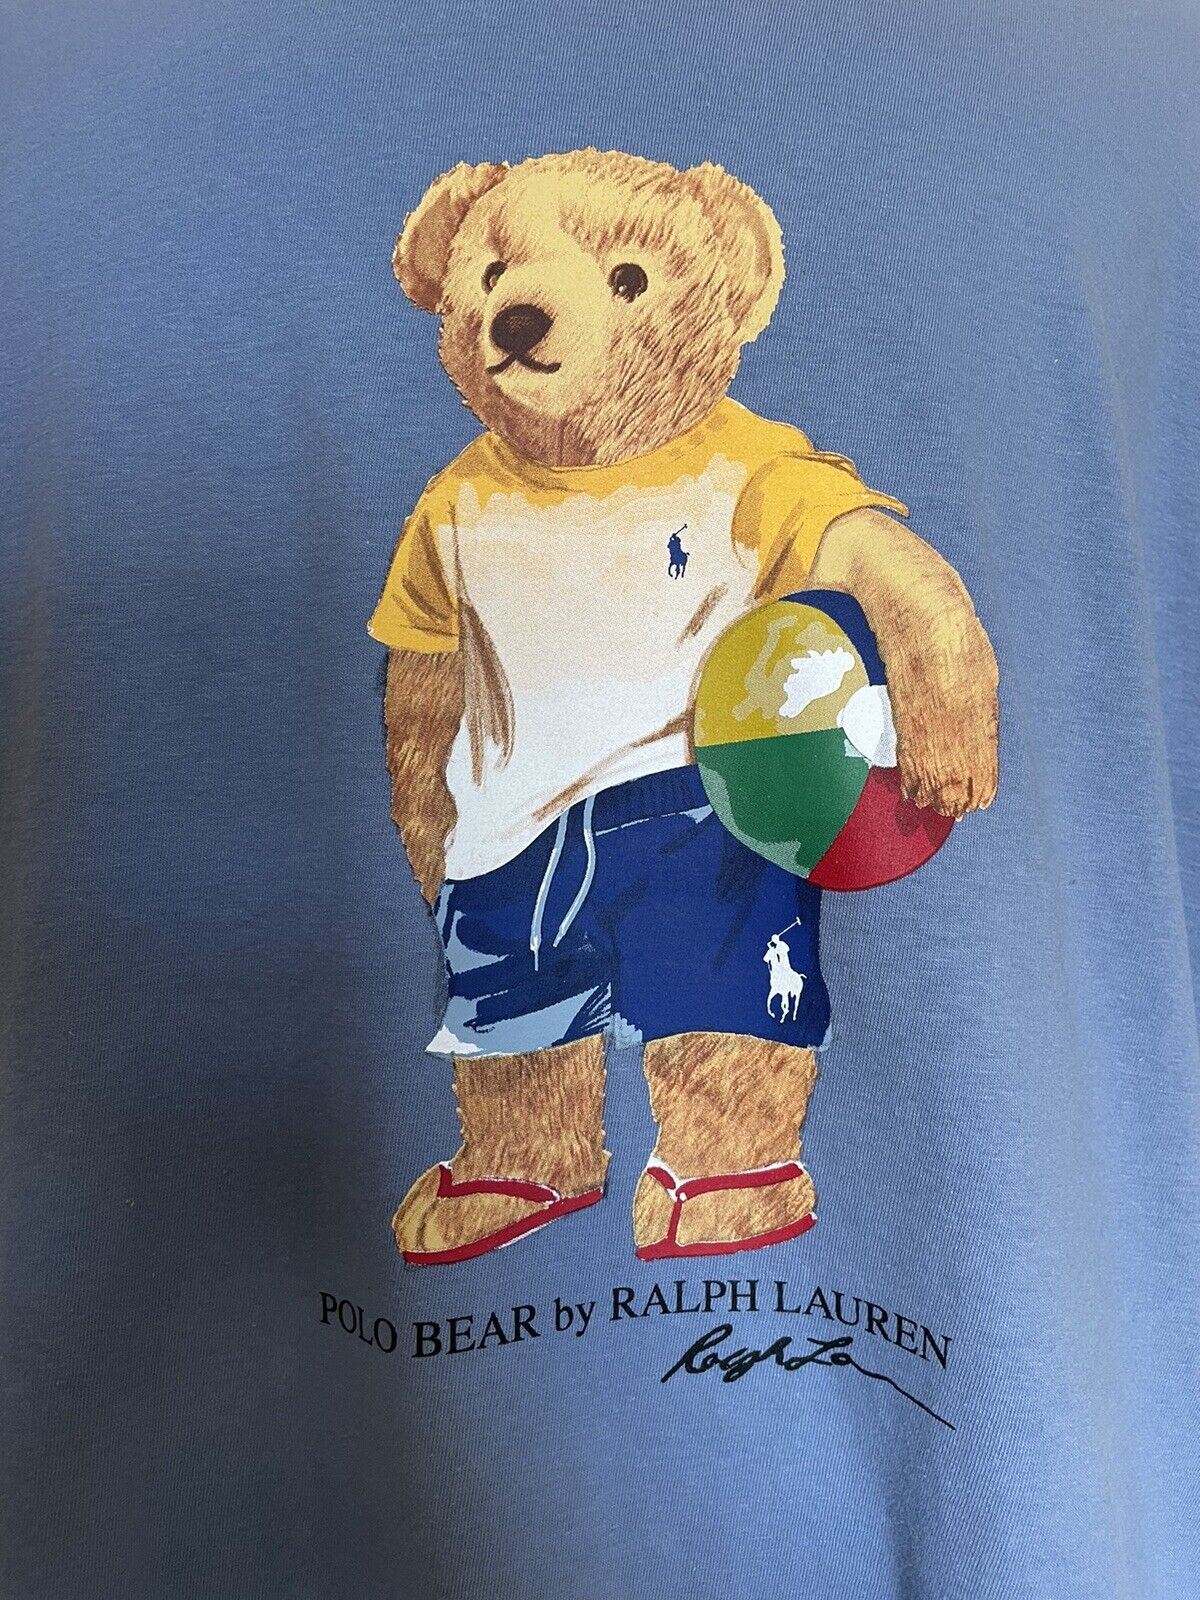 NWT $69.5 Polo Ralph Lauren Bear T-Shirt Blue XLT/TGL